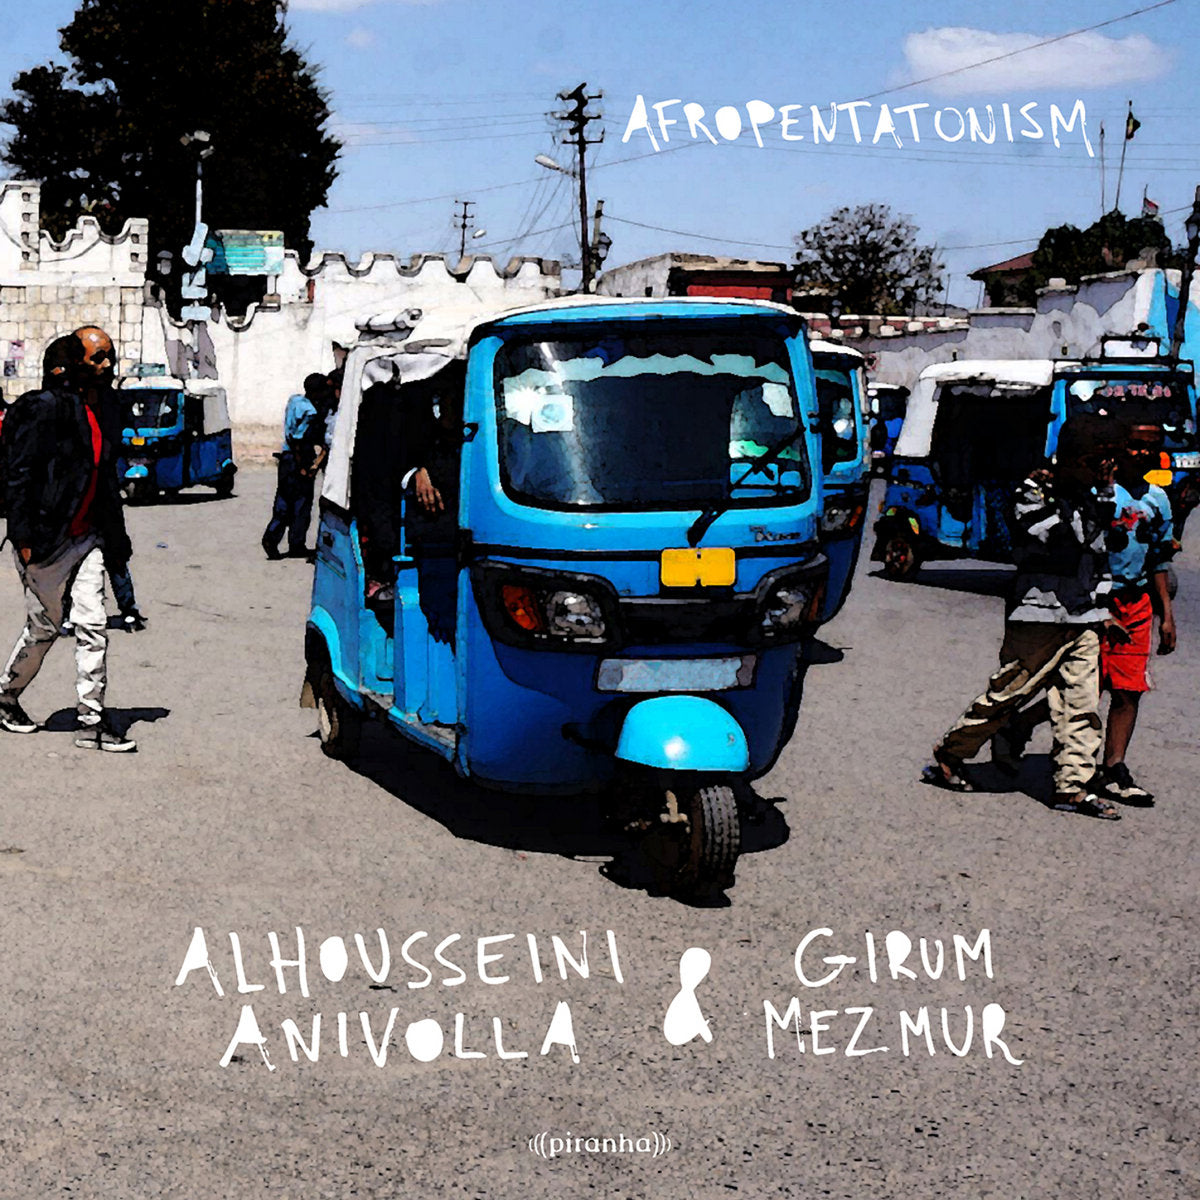 Alhousseini Anivolla & Girum Mezmur - Afropentatonism - LP